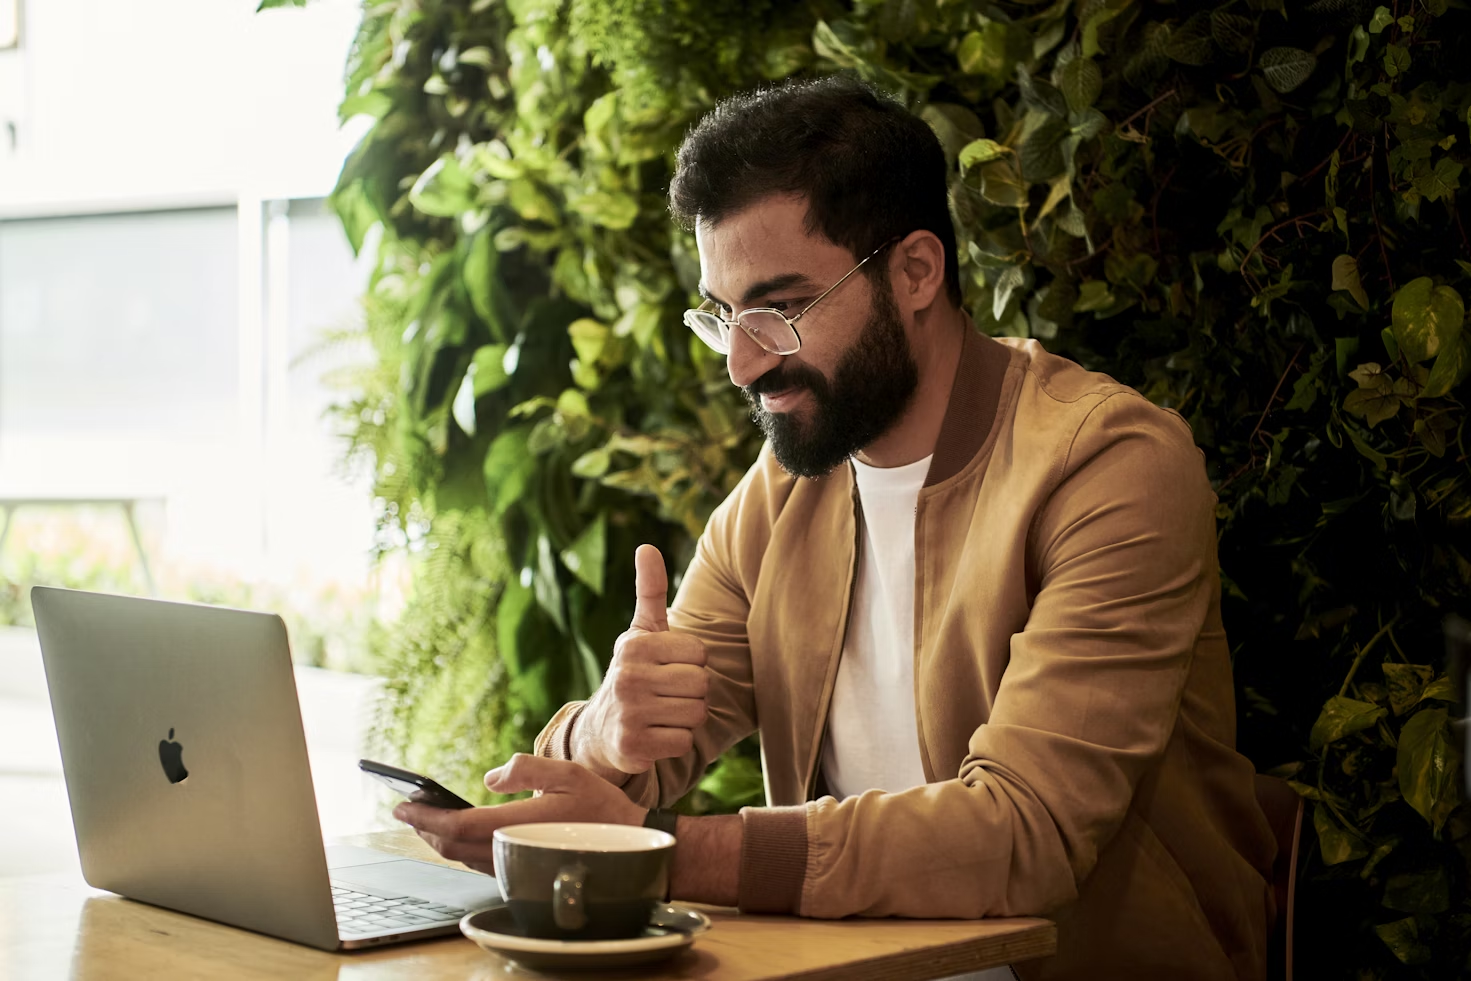 Homme avec une veste marron levant le pouce devant l'écran de son ordinateur portable posé à côté d'une tasse à café